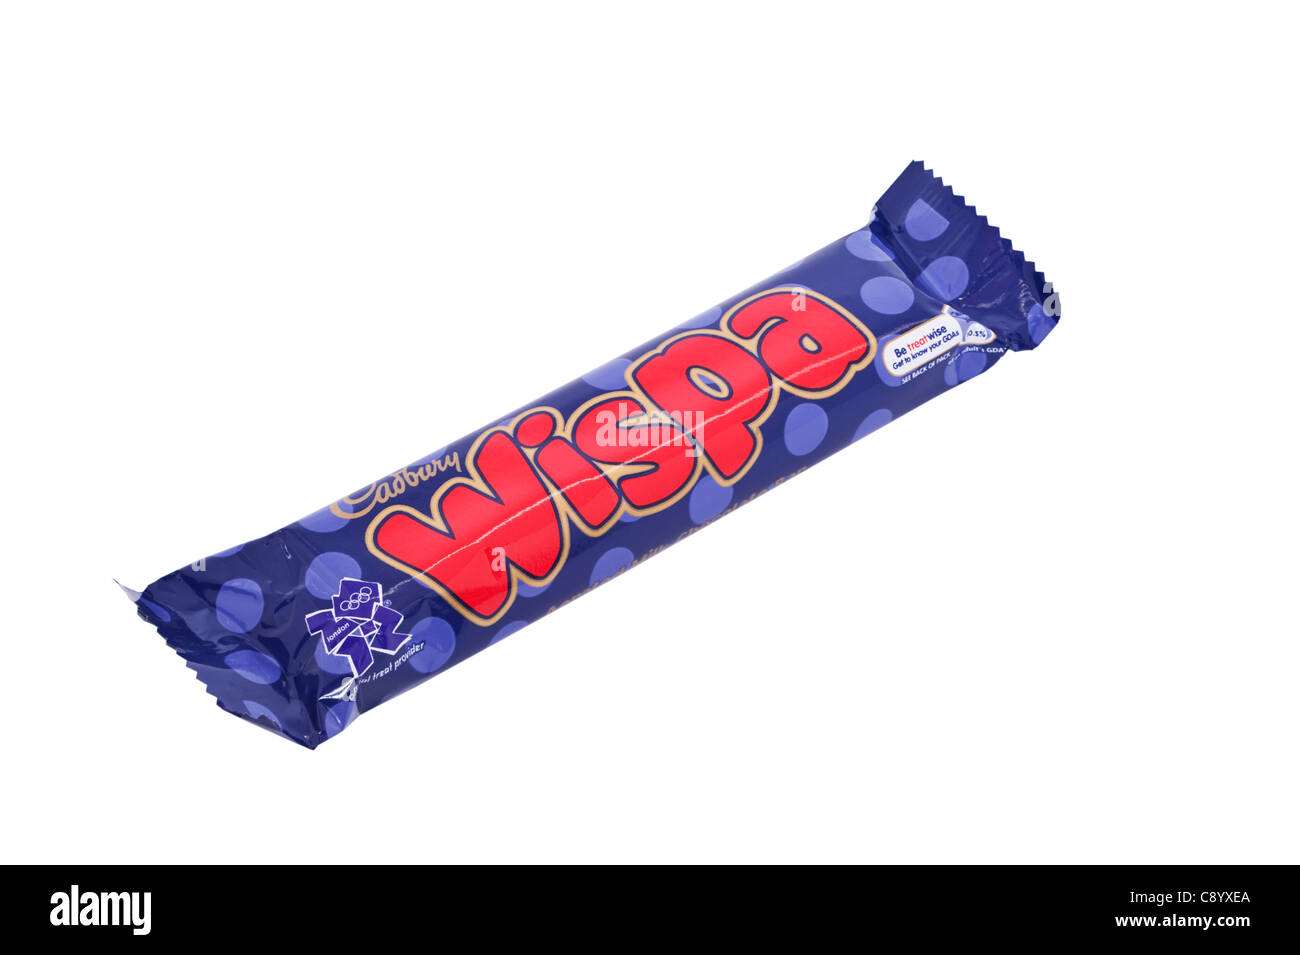 A Cadbury Wispa chocolate bar by Cadburys on a white background Stock Photo